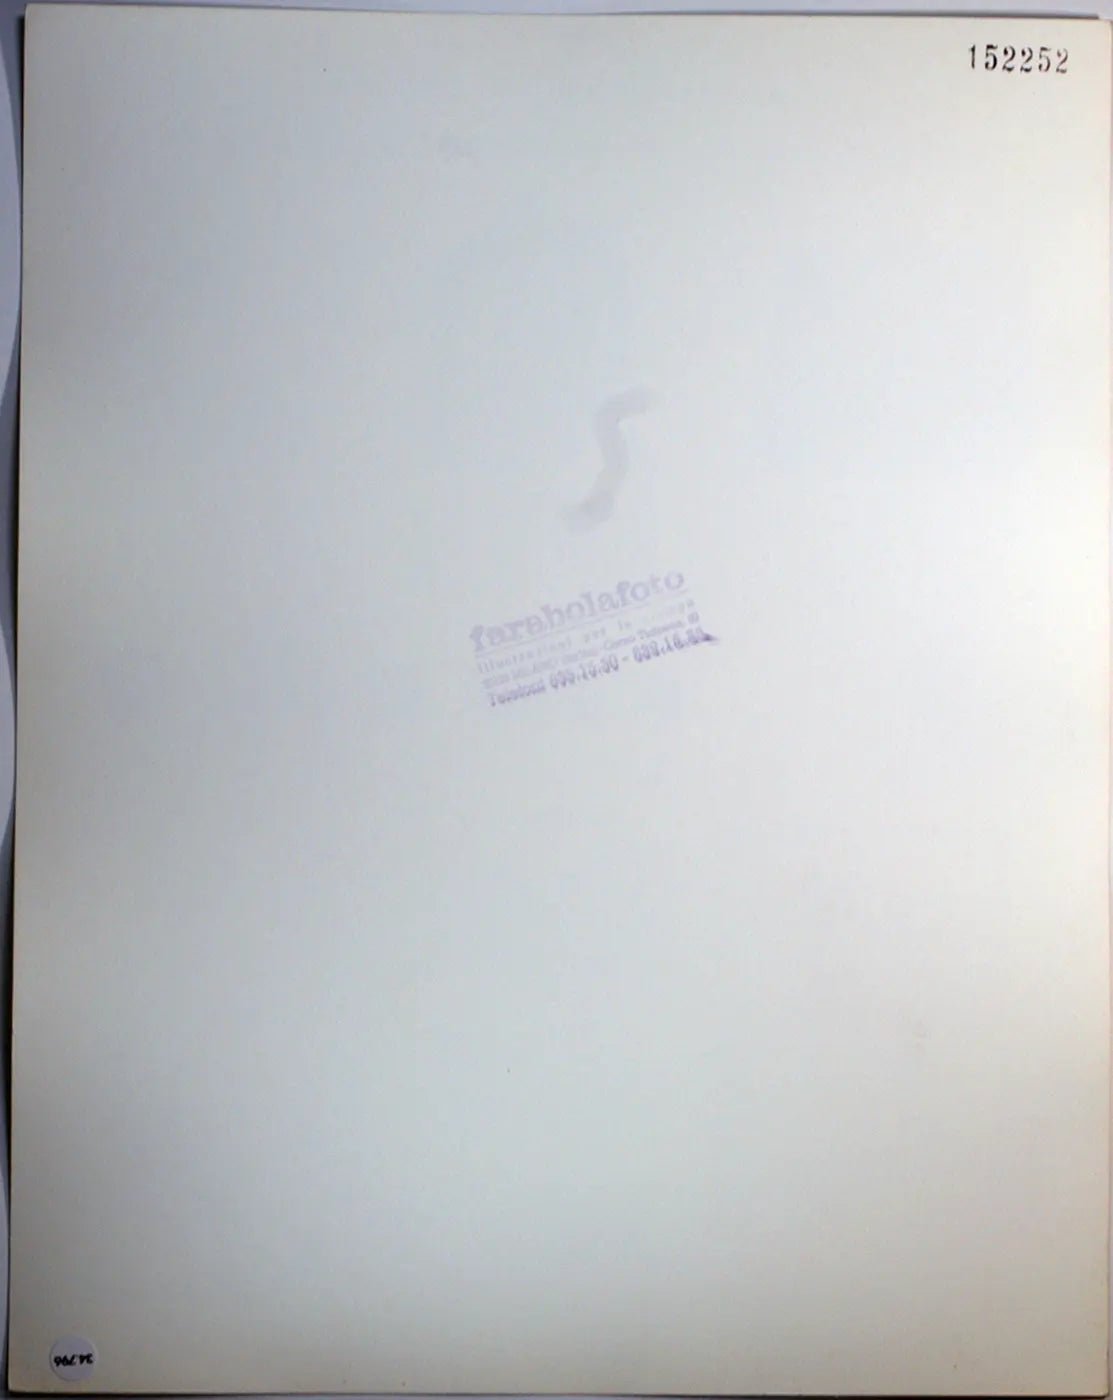 Pubblicità Latrine alla turca Ft 34796 - Stampa 30x24 cm - Farabola Stampa ai sali d'argento